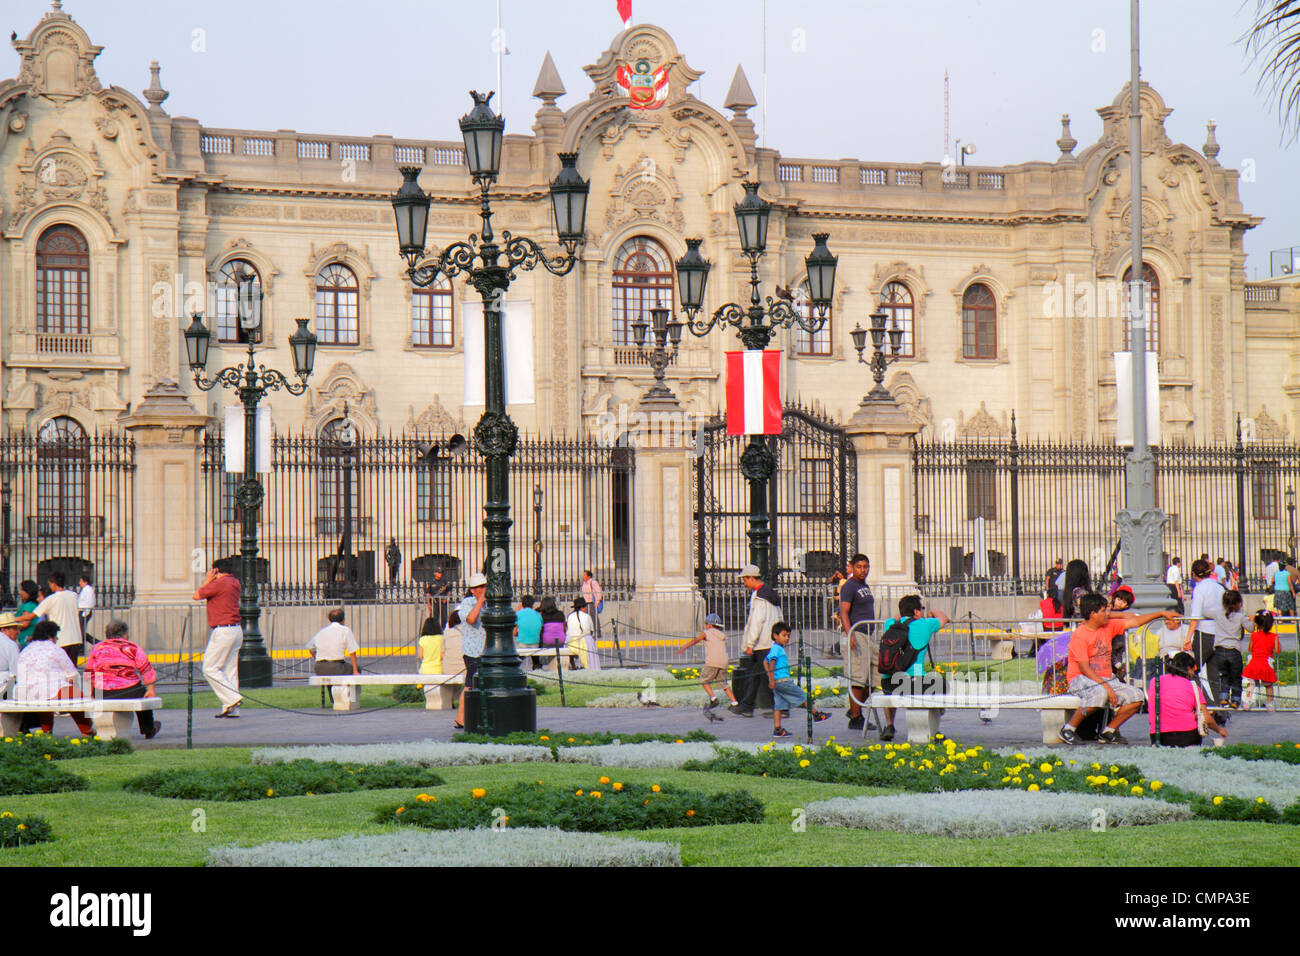 Lima Peru, Plaza de Armas, Palacio de Gobierno, Regierungspalast, Regierungsgebäude, Neobarock, Architektur außen, Tor, öffentlicher Platz, Park, H Stockfoto